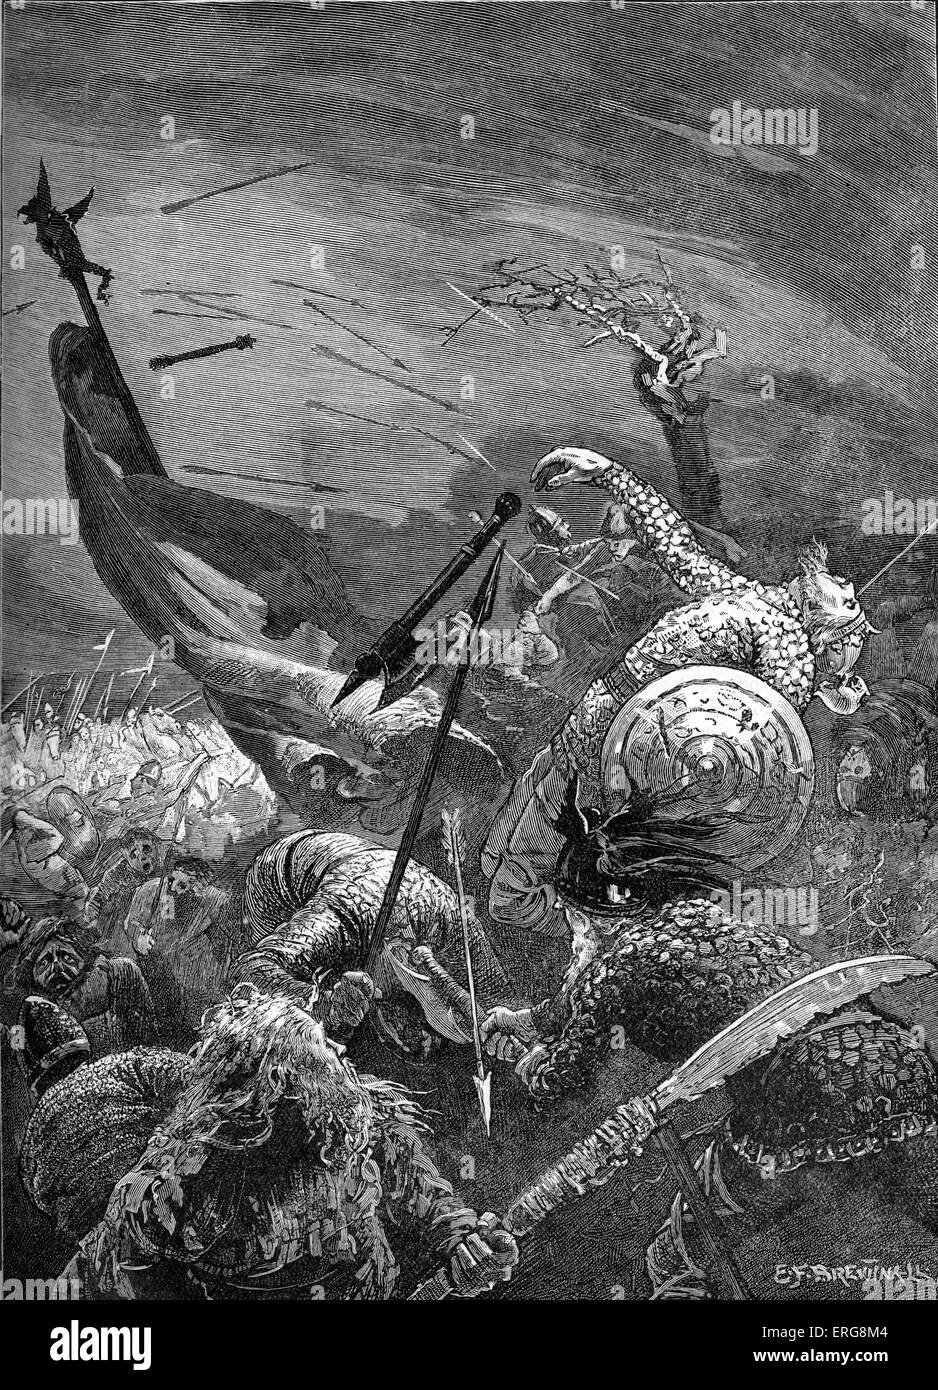 Schlacht bei Hastings - Tod von Harold II (Harold Godwinson), 14 Oktober 1066. Schlacht der normannischen Eroberung Englands unter Wilhelm Stockfoto